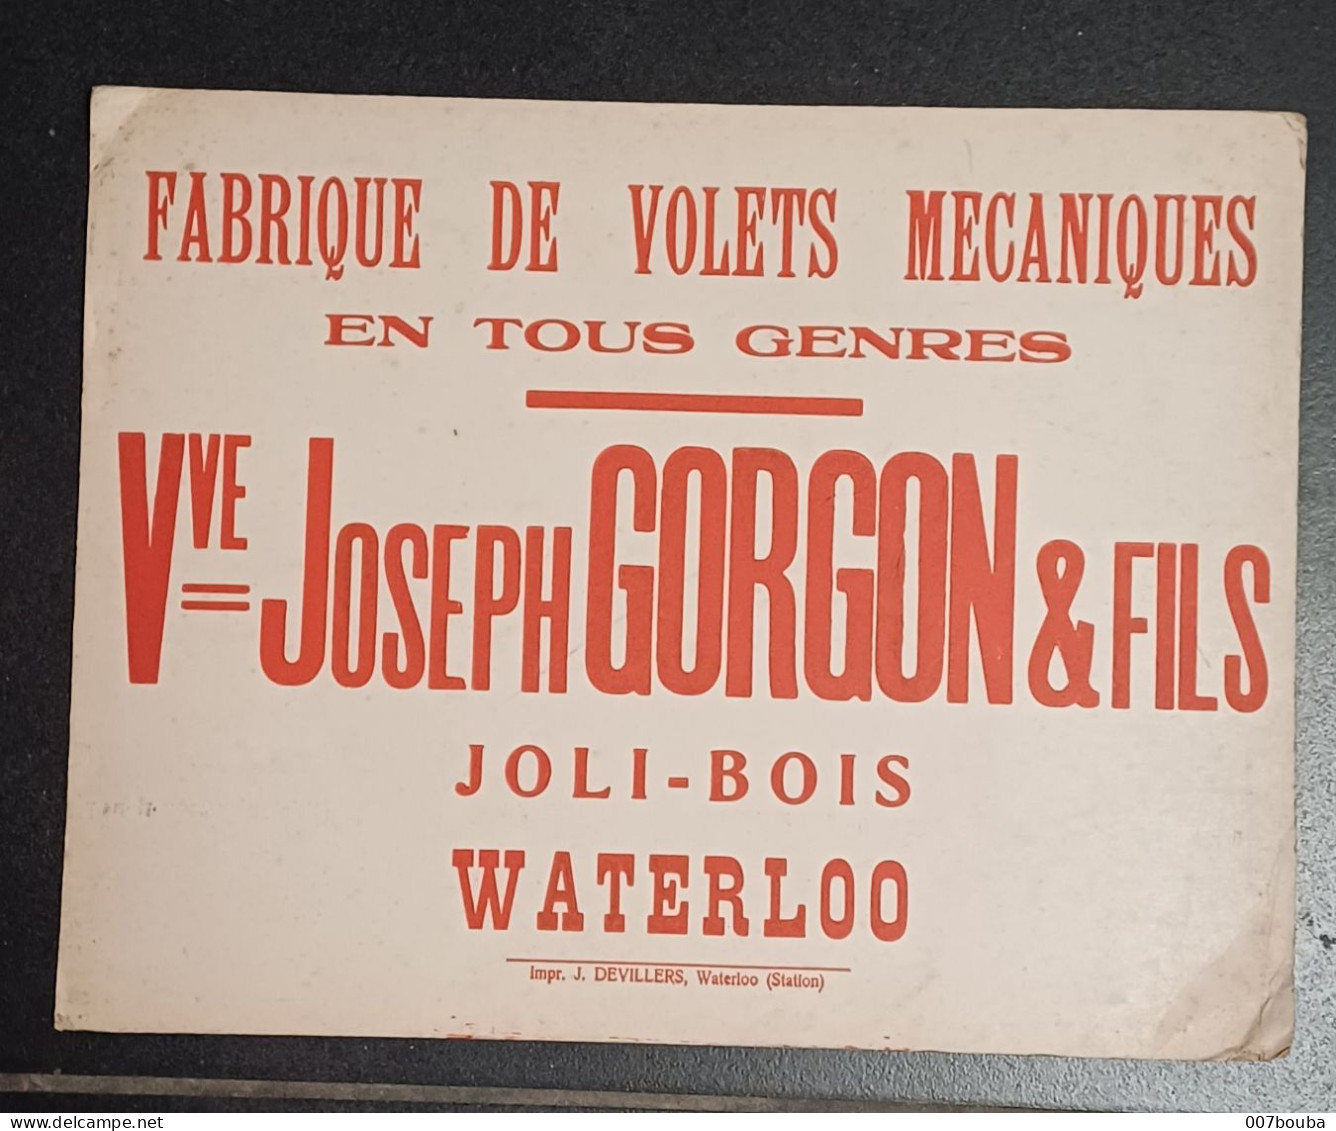 WATERLOO JOLI-BOIS / Vve JOSEPH GORGON & FILS _ FABRIQUE DE VOLETS MÉCANIQUES / FORMAT 30x25cm - Targhe Di Cartone